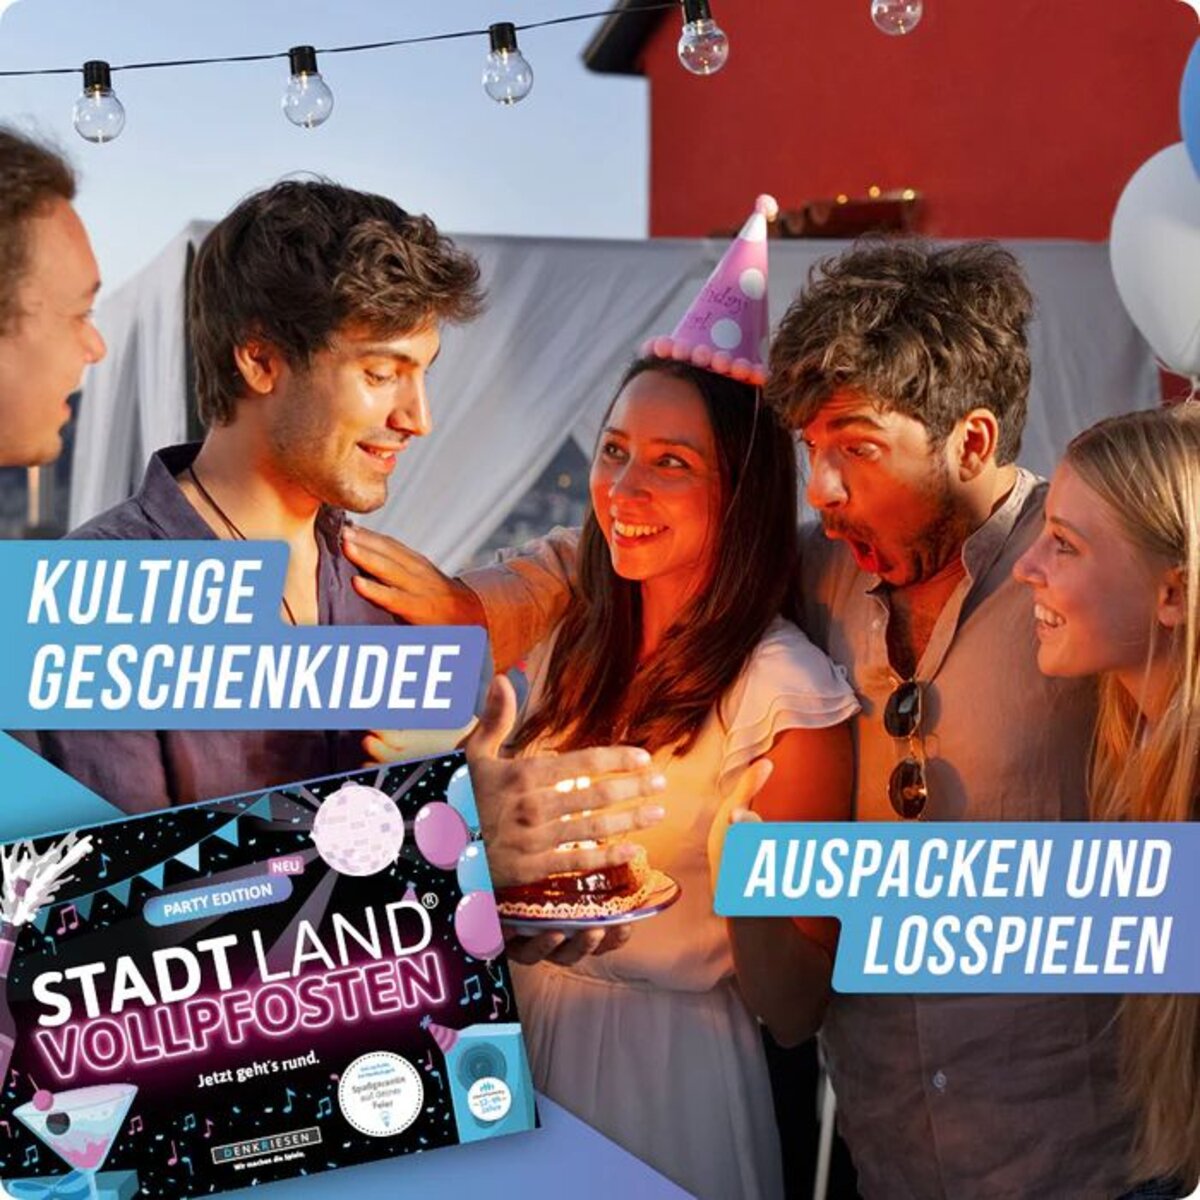 Denkriesen Stadt Land Vollpfosten - Party Edition "Jetzt geht's Rund"